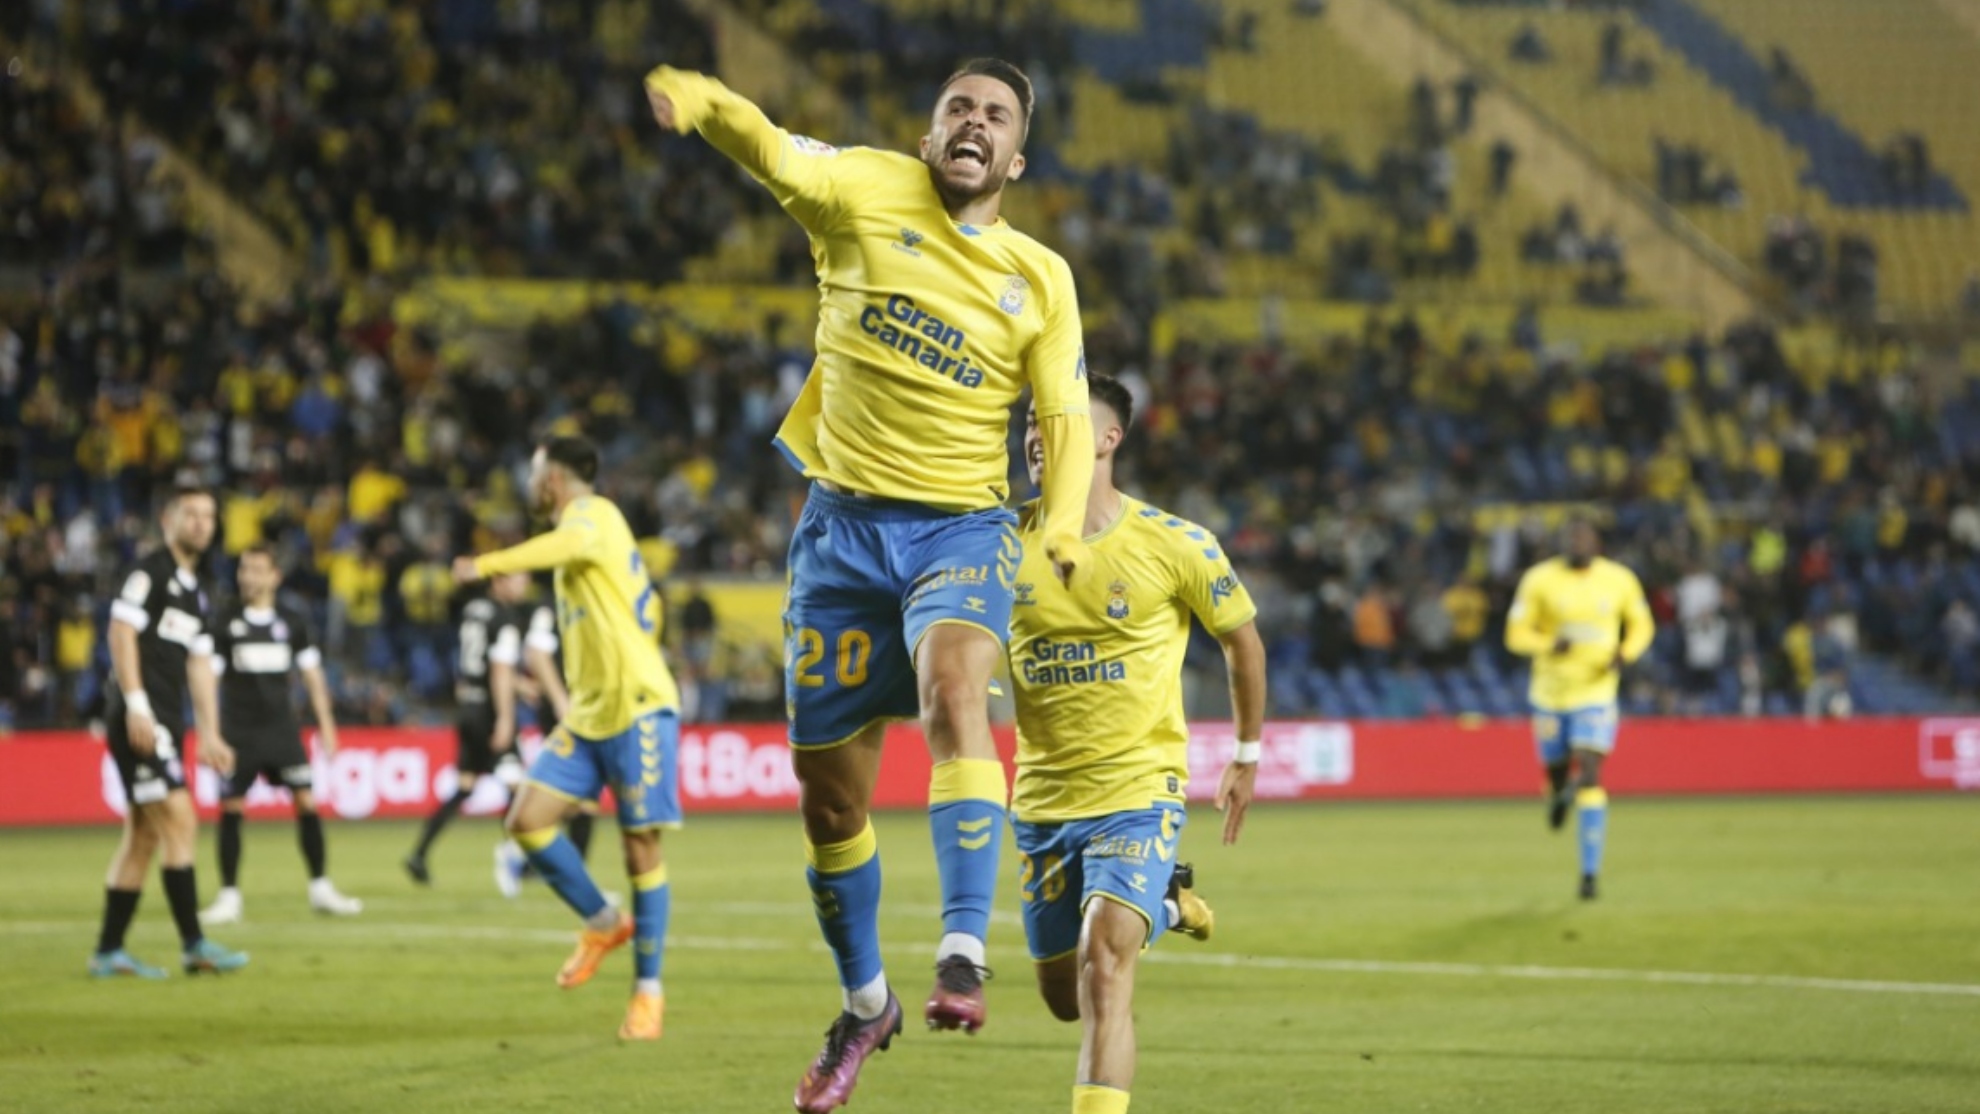 Kirian celebra el gol que marcó al Amorebieta.